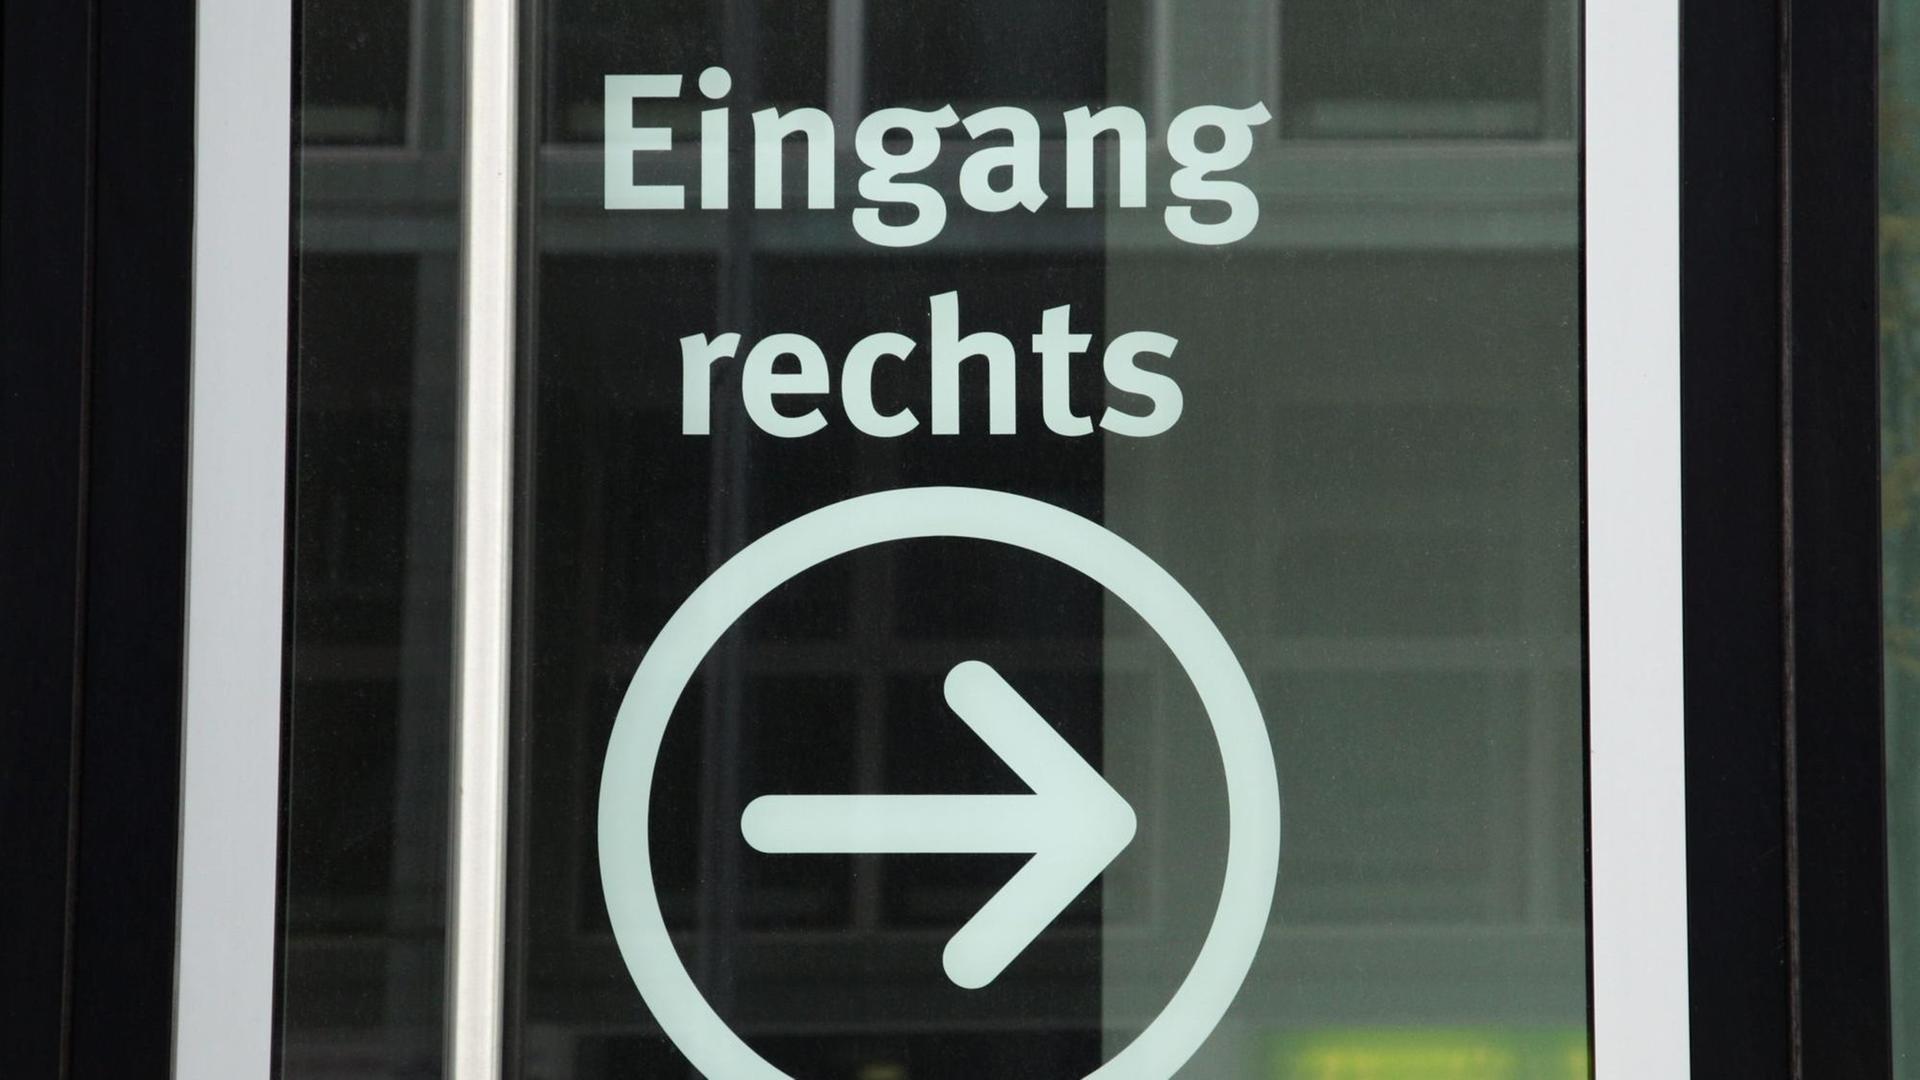 Auf einer Glastür steht "Eingang rechts" mit einem eingekreisten Pfeil